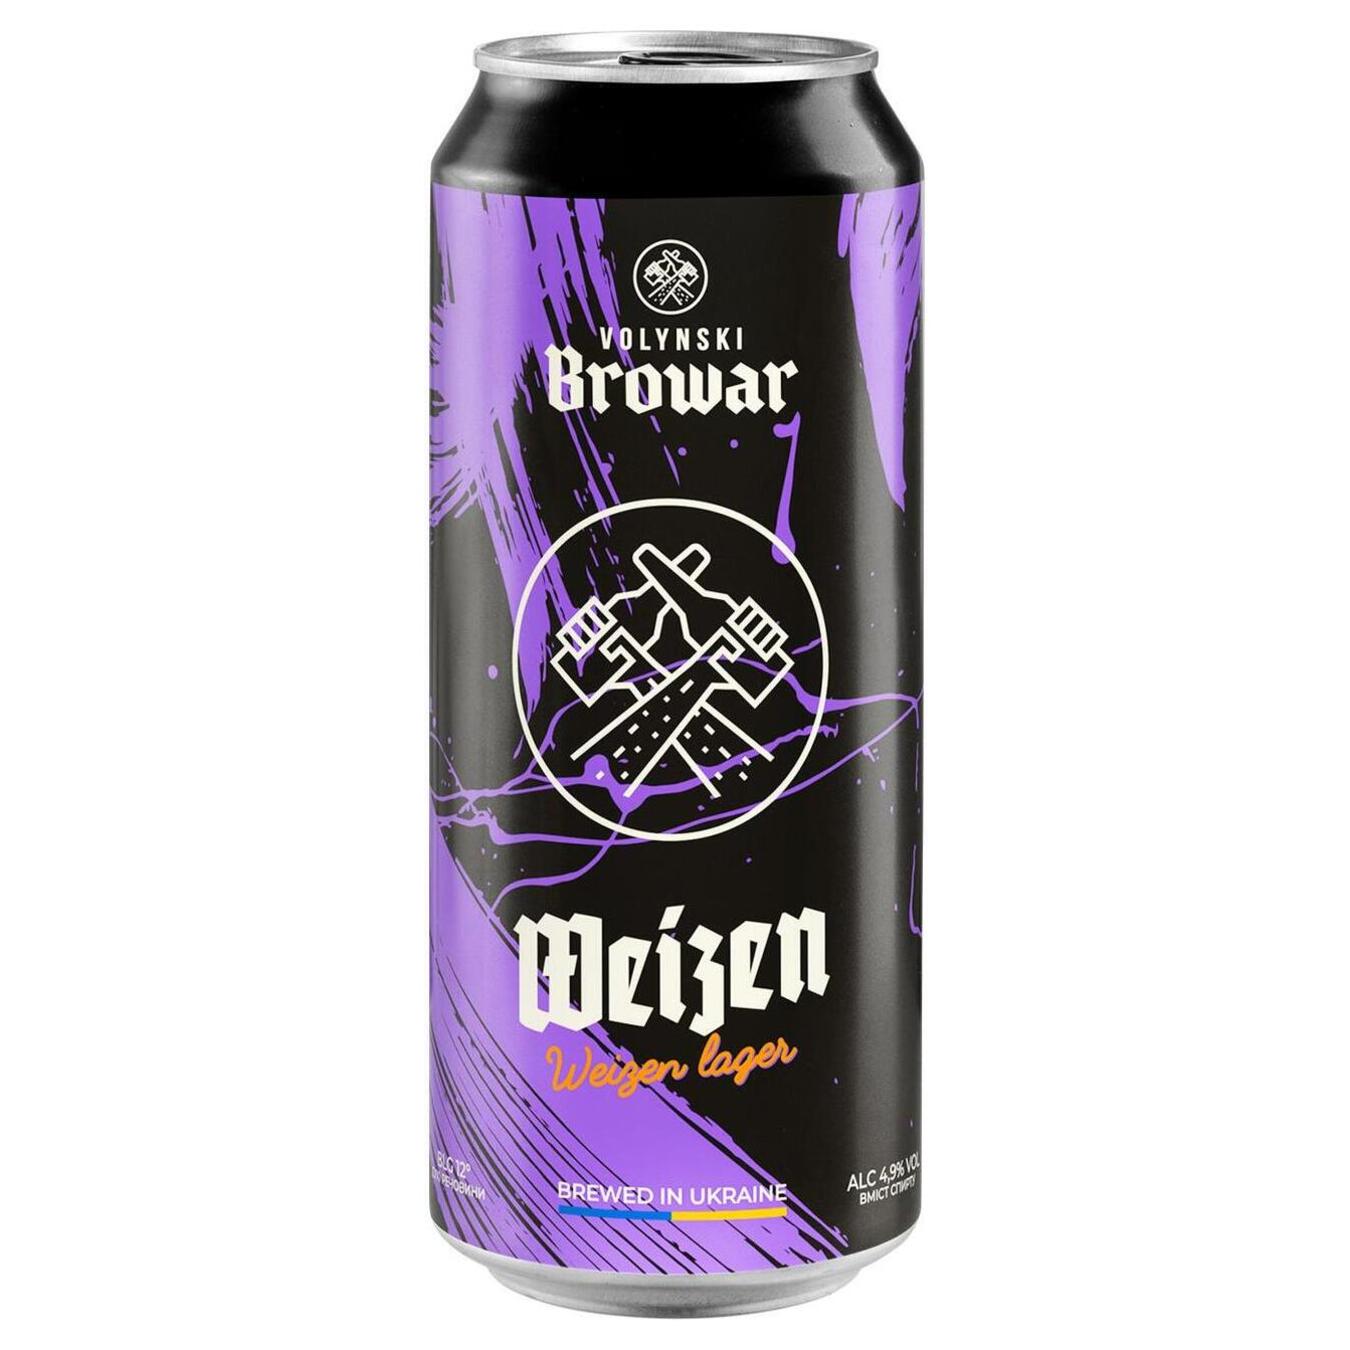 Пиво Волынский Бровар Weizen светлое нефильтрованное пшеничное 4,9% 0,5л